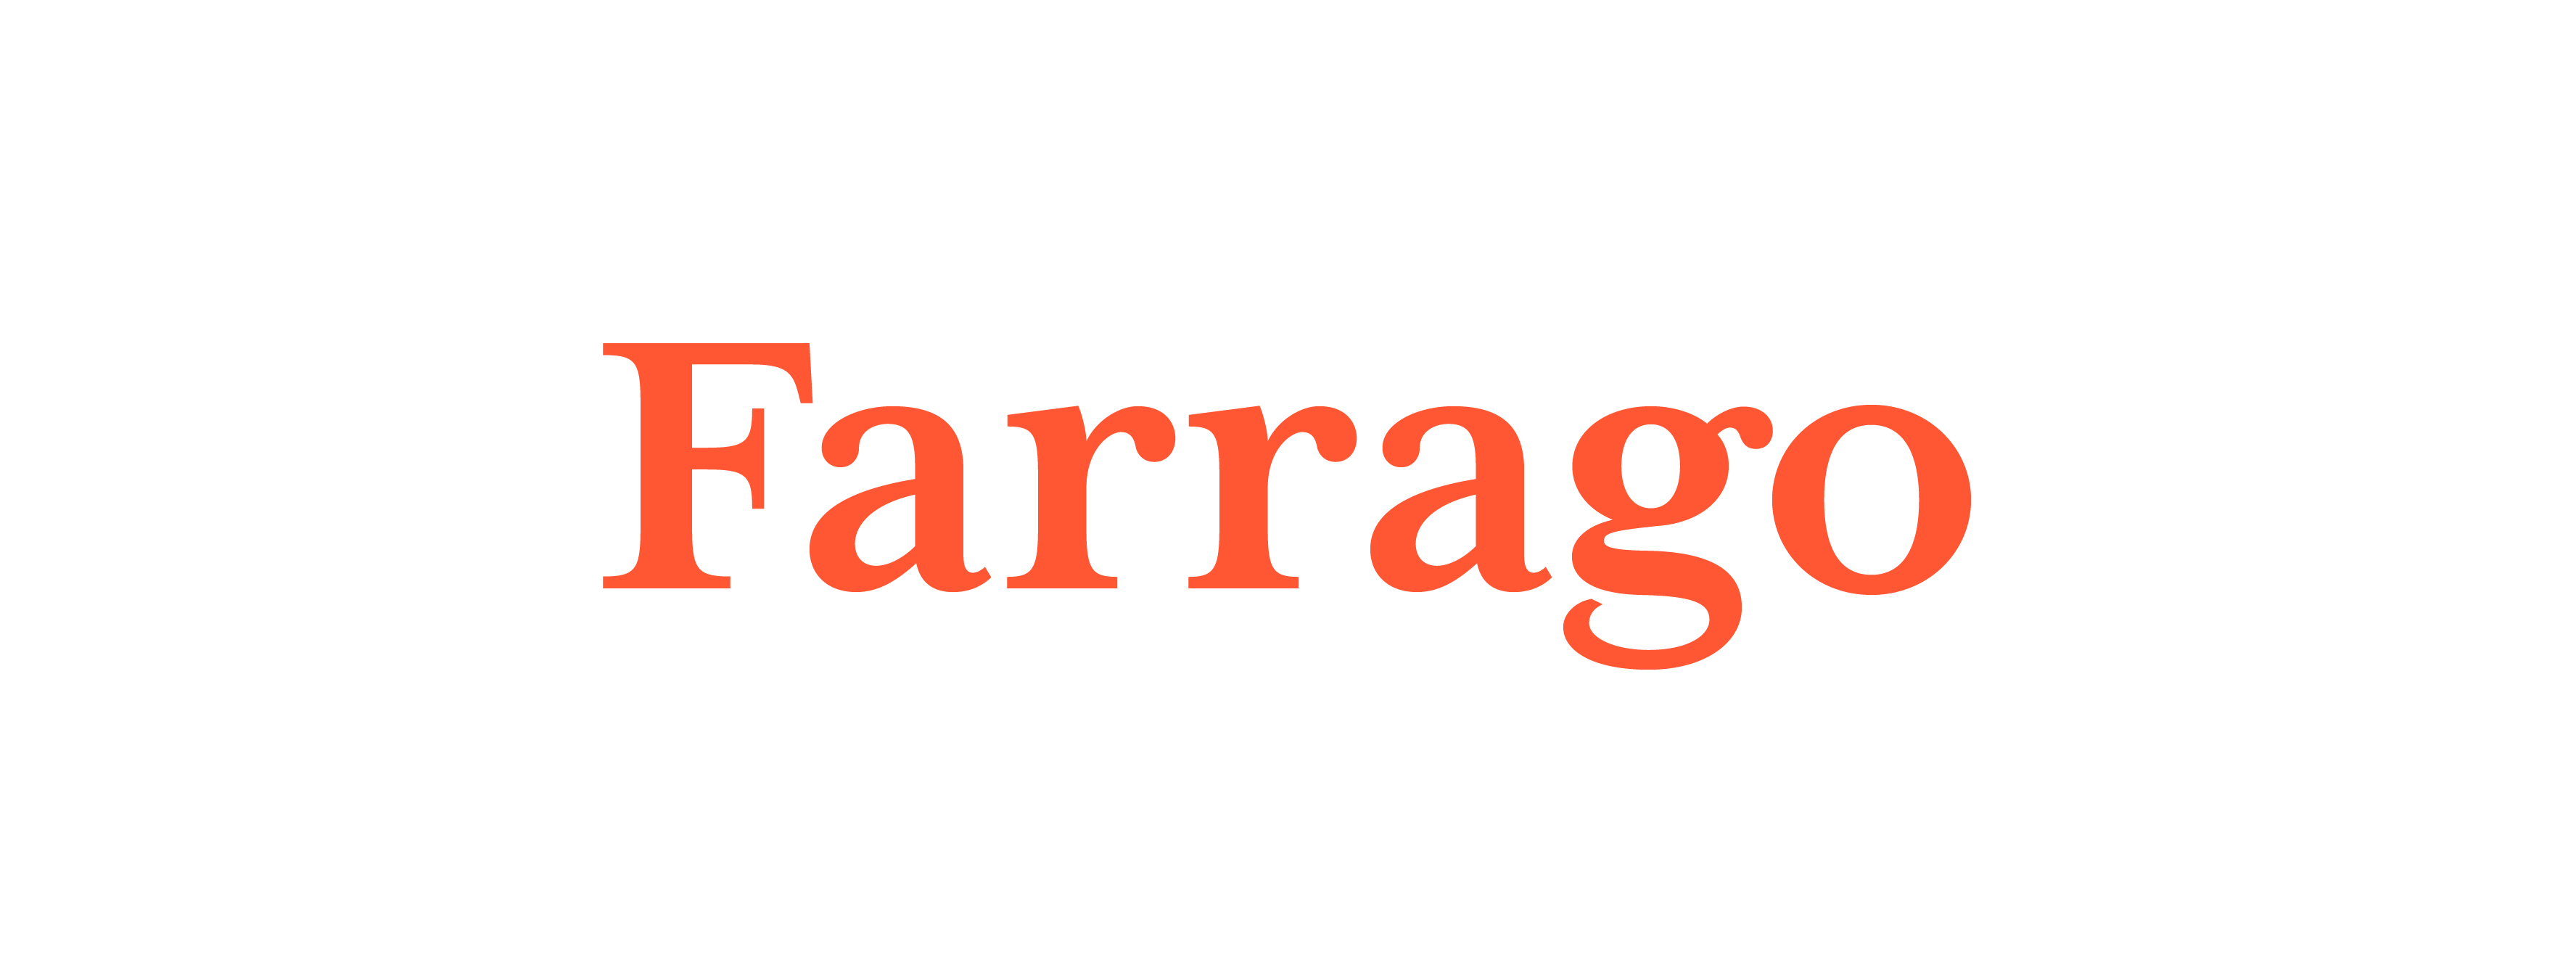 Farrago - Word Daily